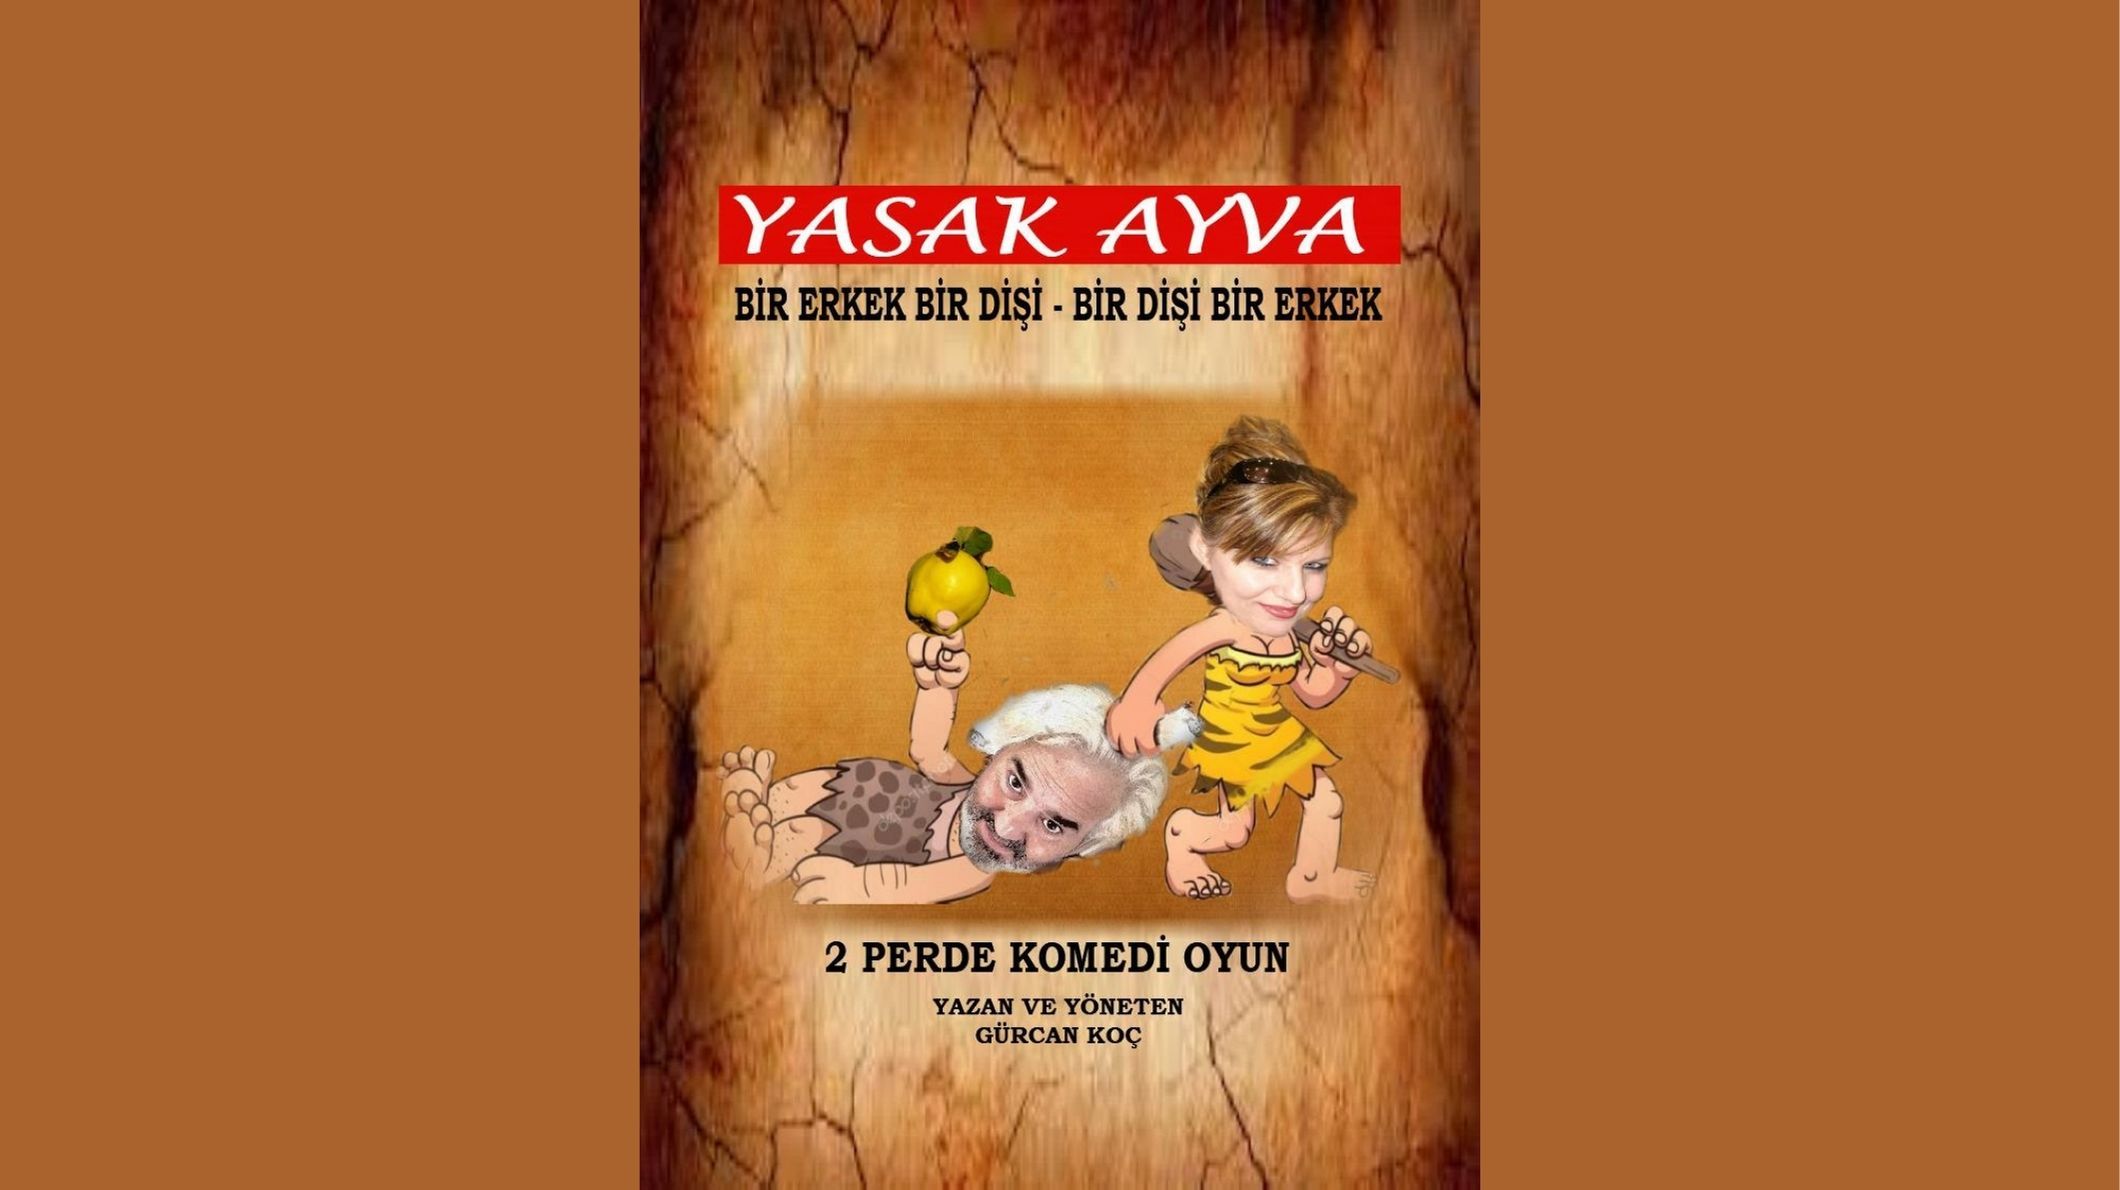 Yasak Ayva - Şato Yazar Sahne - Ankara